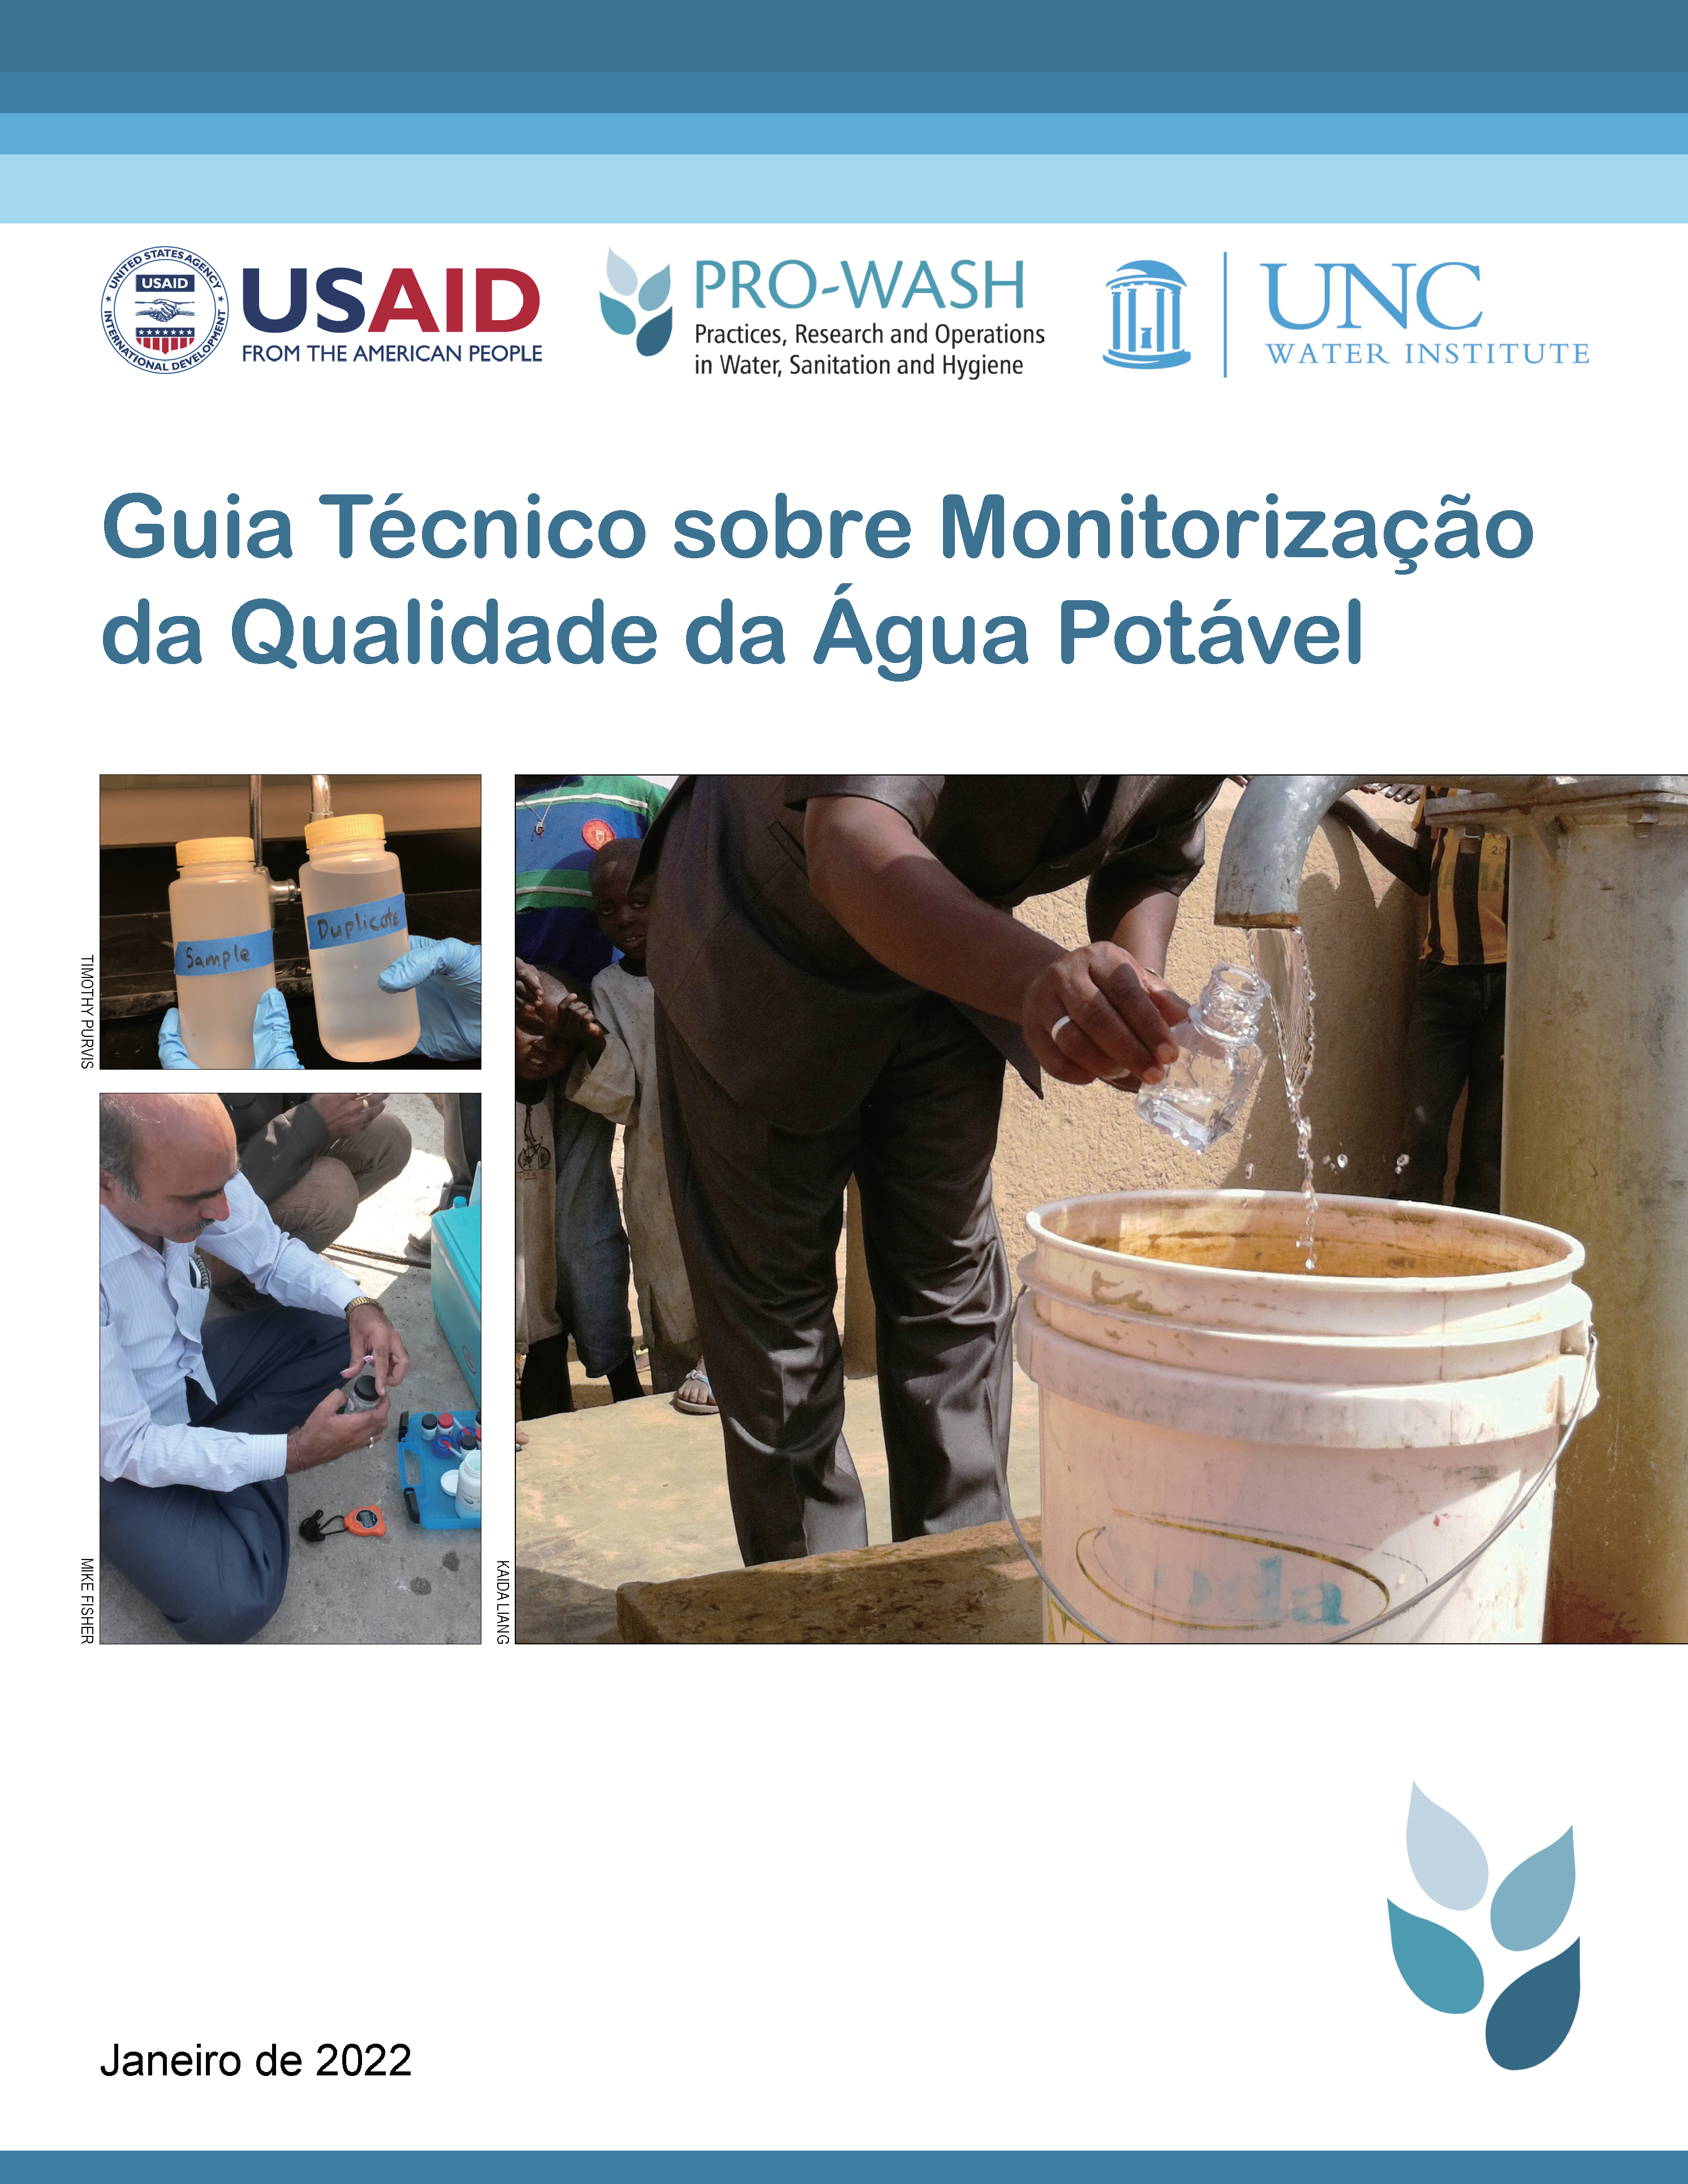 Cover page for Guia Técnico sobre Monitorização da Qualidade da Água Potável